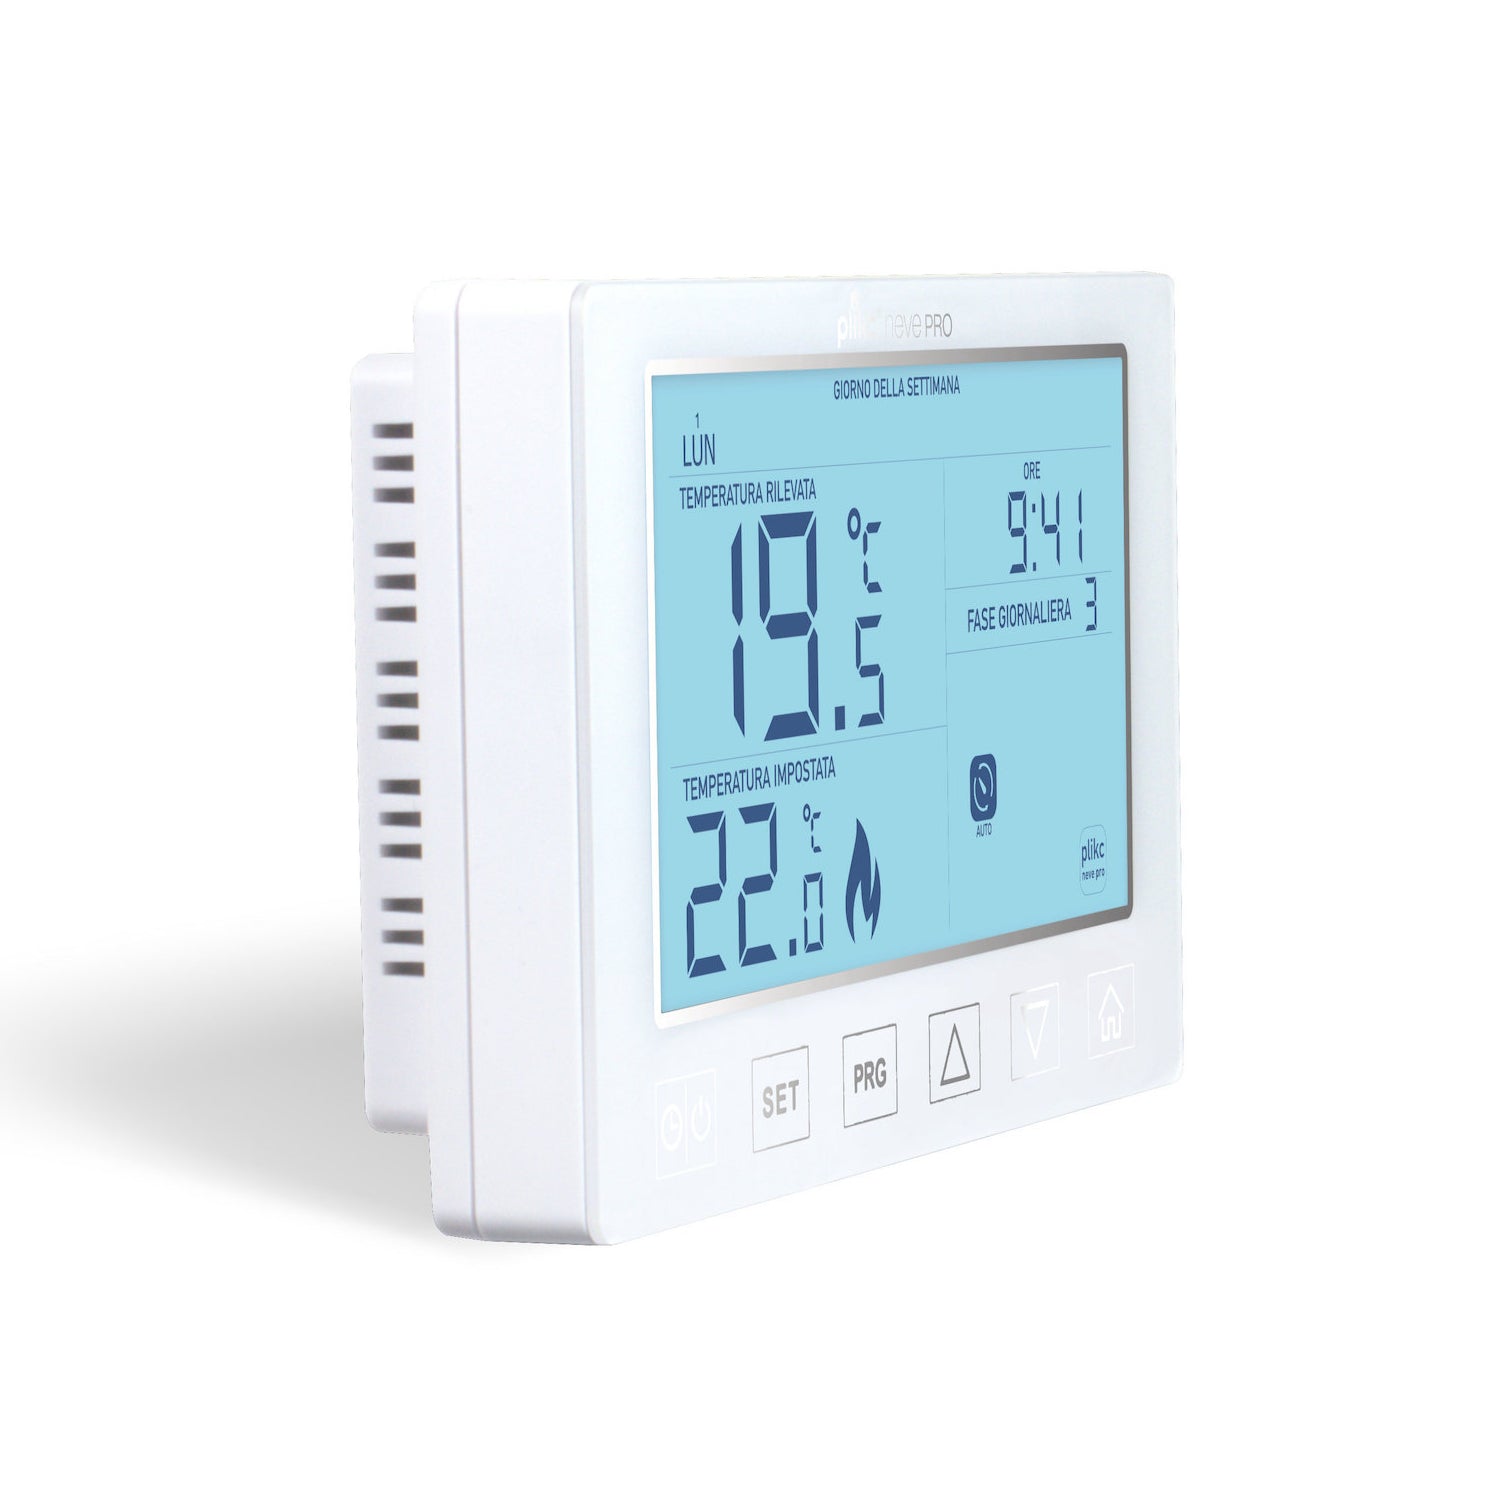 Neve Pro - cronotermostato/termostato digitale a batteria